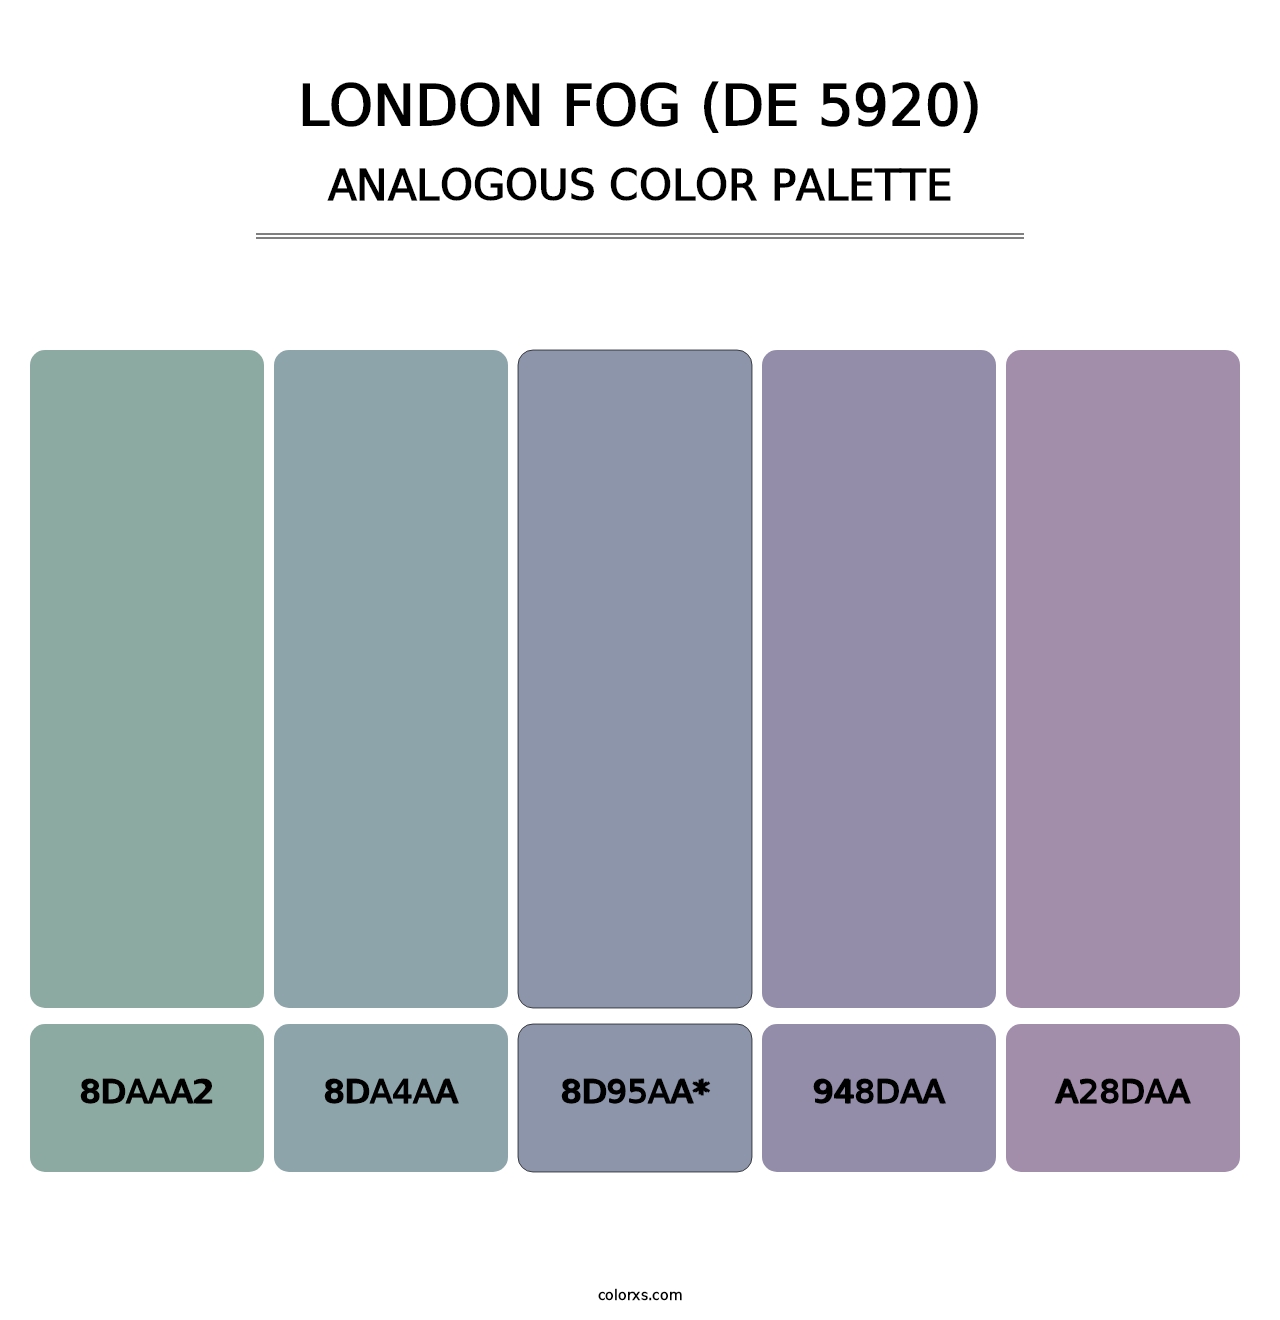 London Fog (DE 5920) - Analogous Color Palette